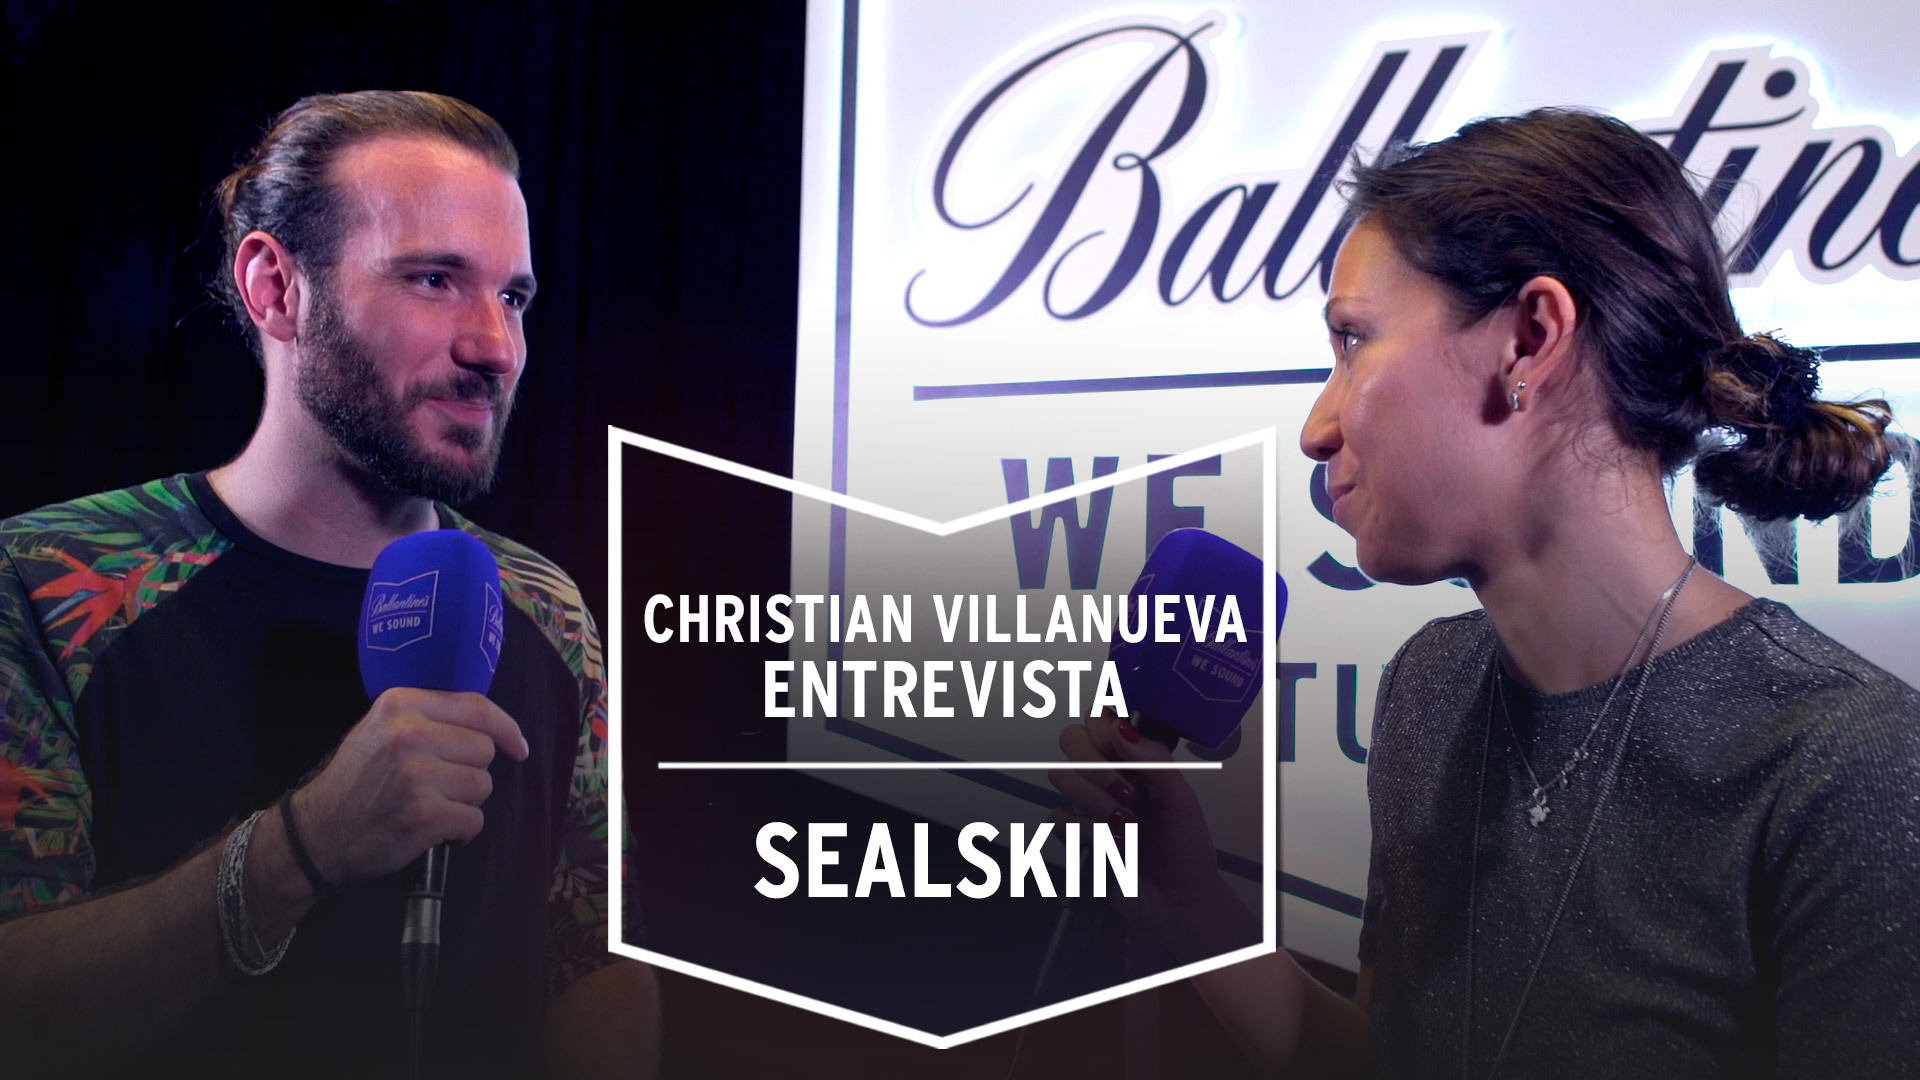 Temporada 1 Christian Villanueva entrevista a 'Sealskin' en la 'Sala Apolo' | We Sound